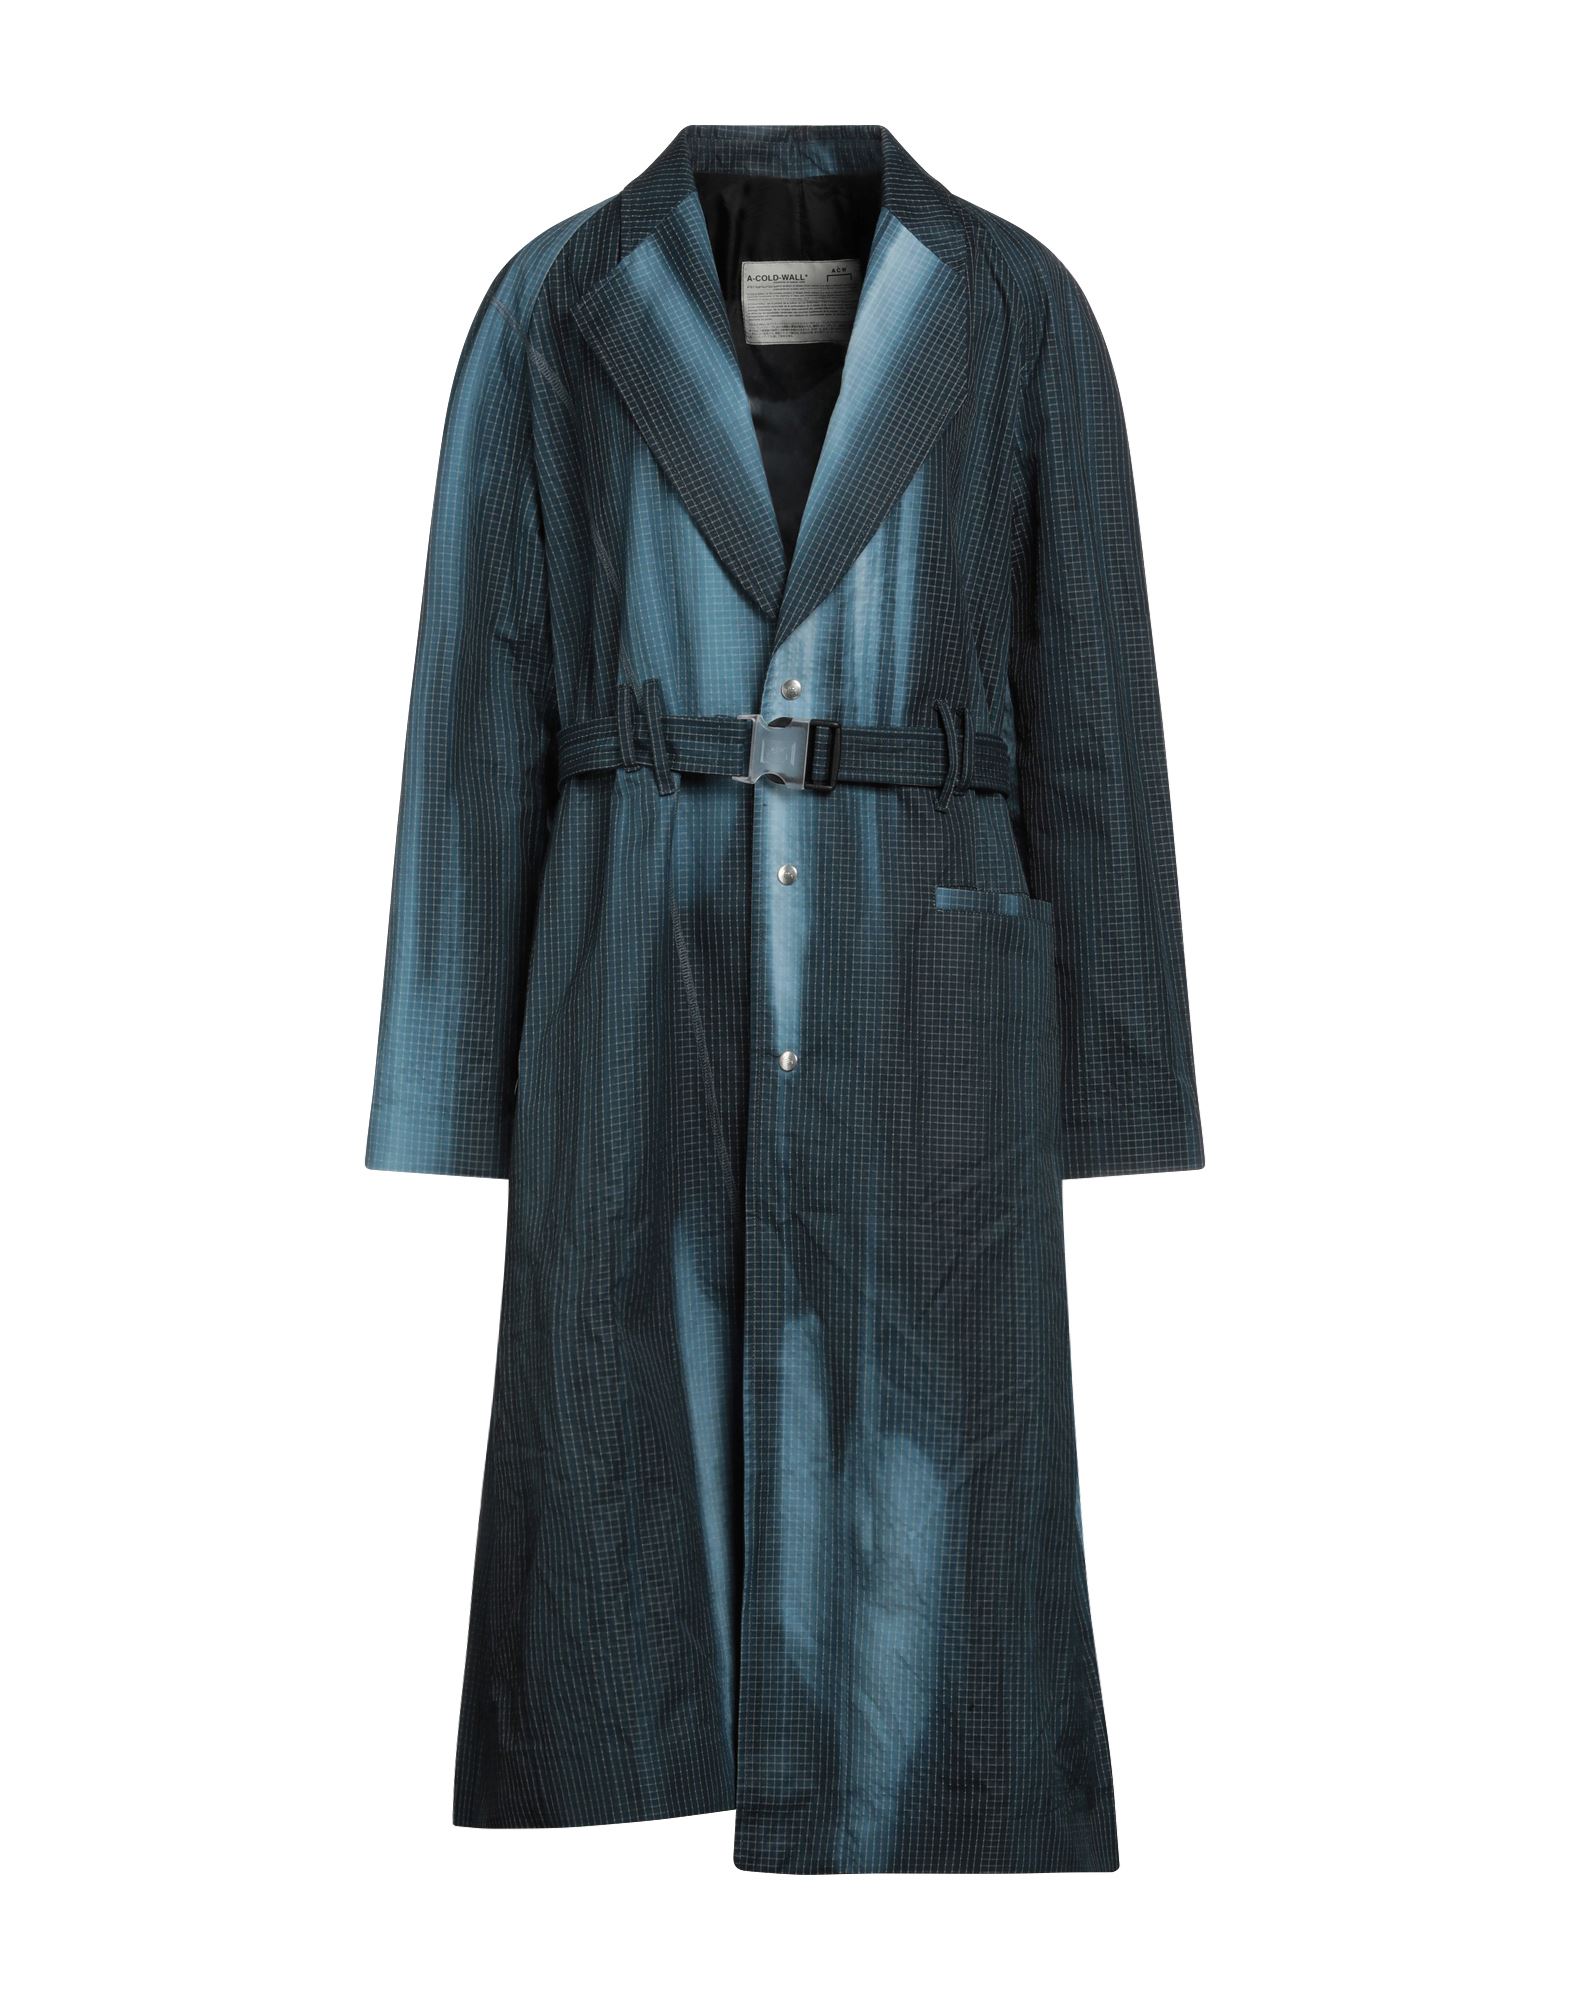 A-cold-wall* * Overcoats In Deep Jade